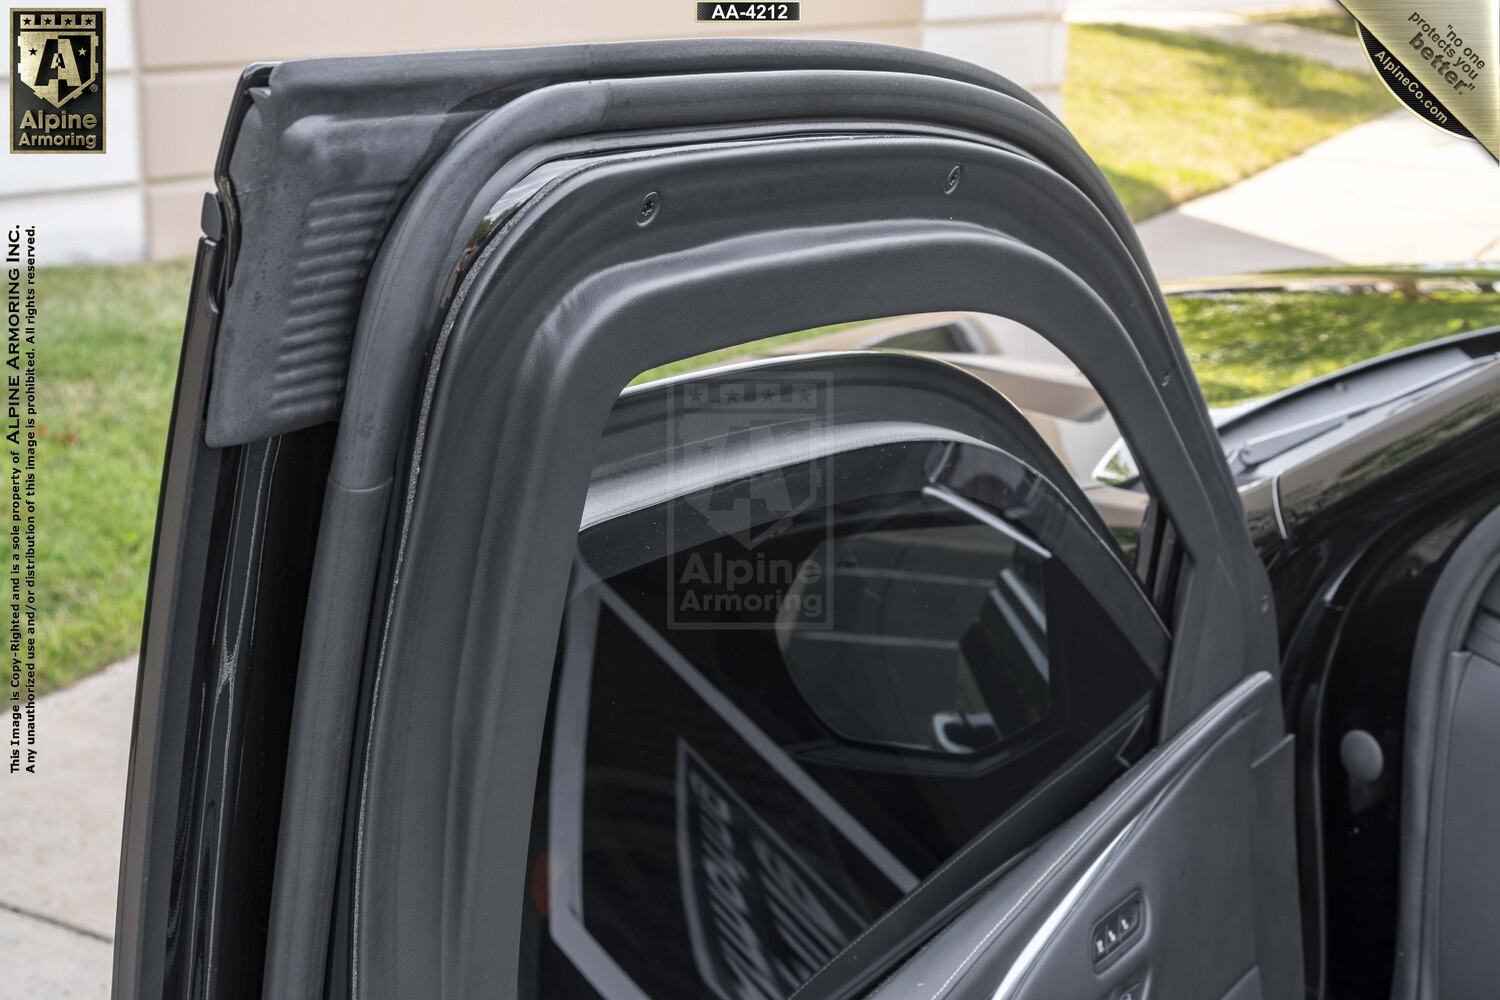 Inventory SUVS Cadillac Escalade ESV VIN:4212 Exterior Interior Images